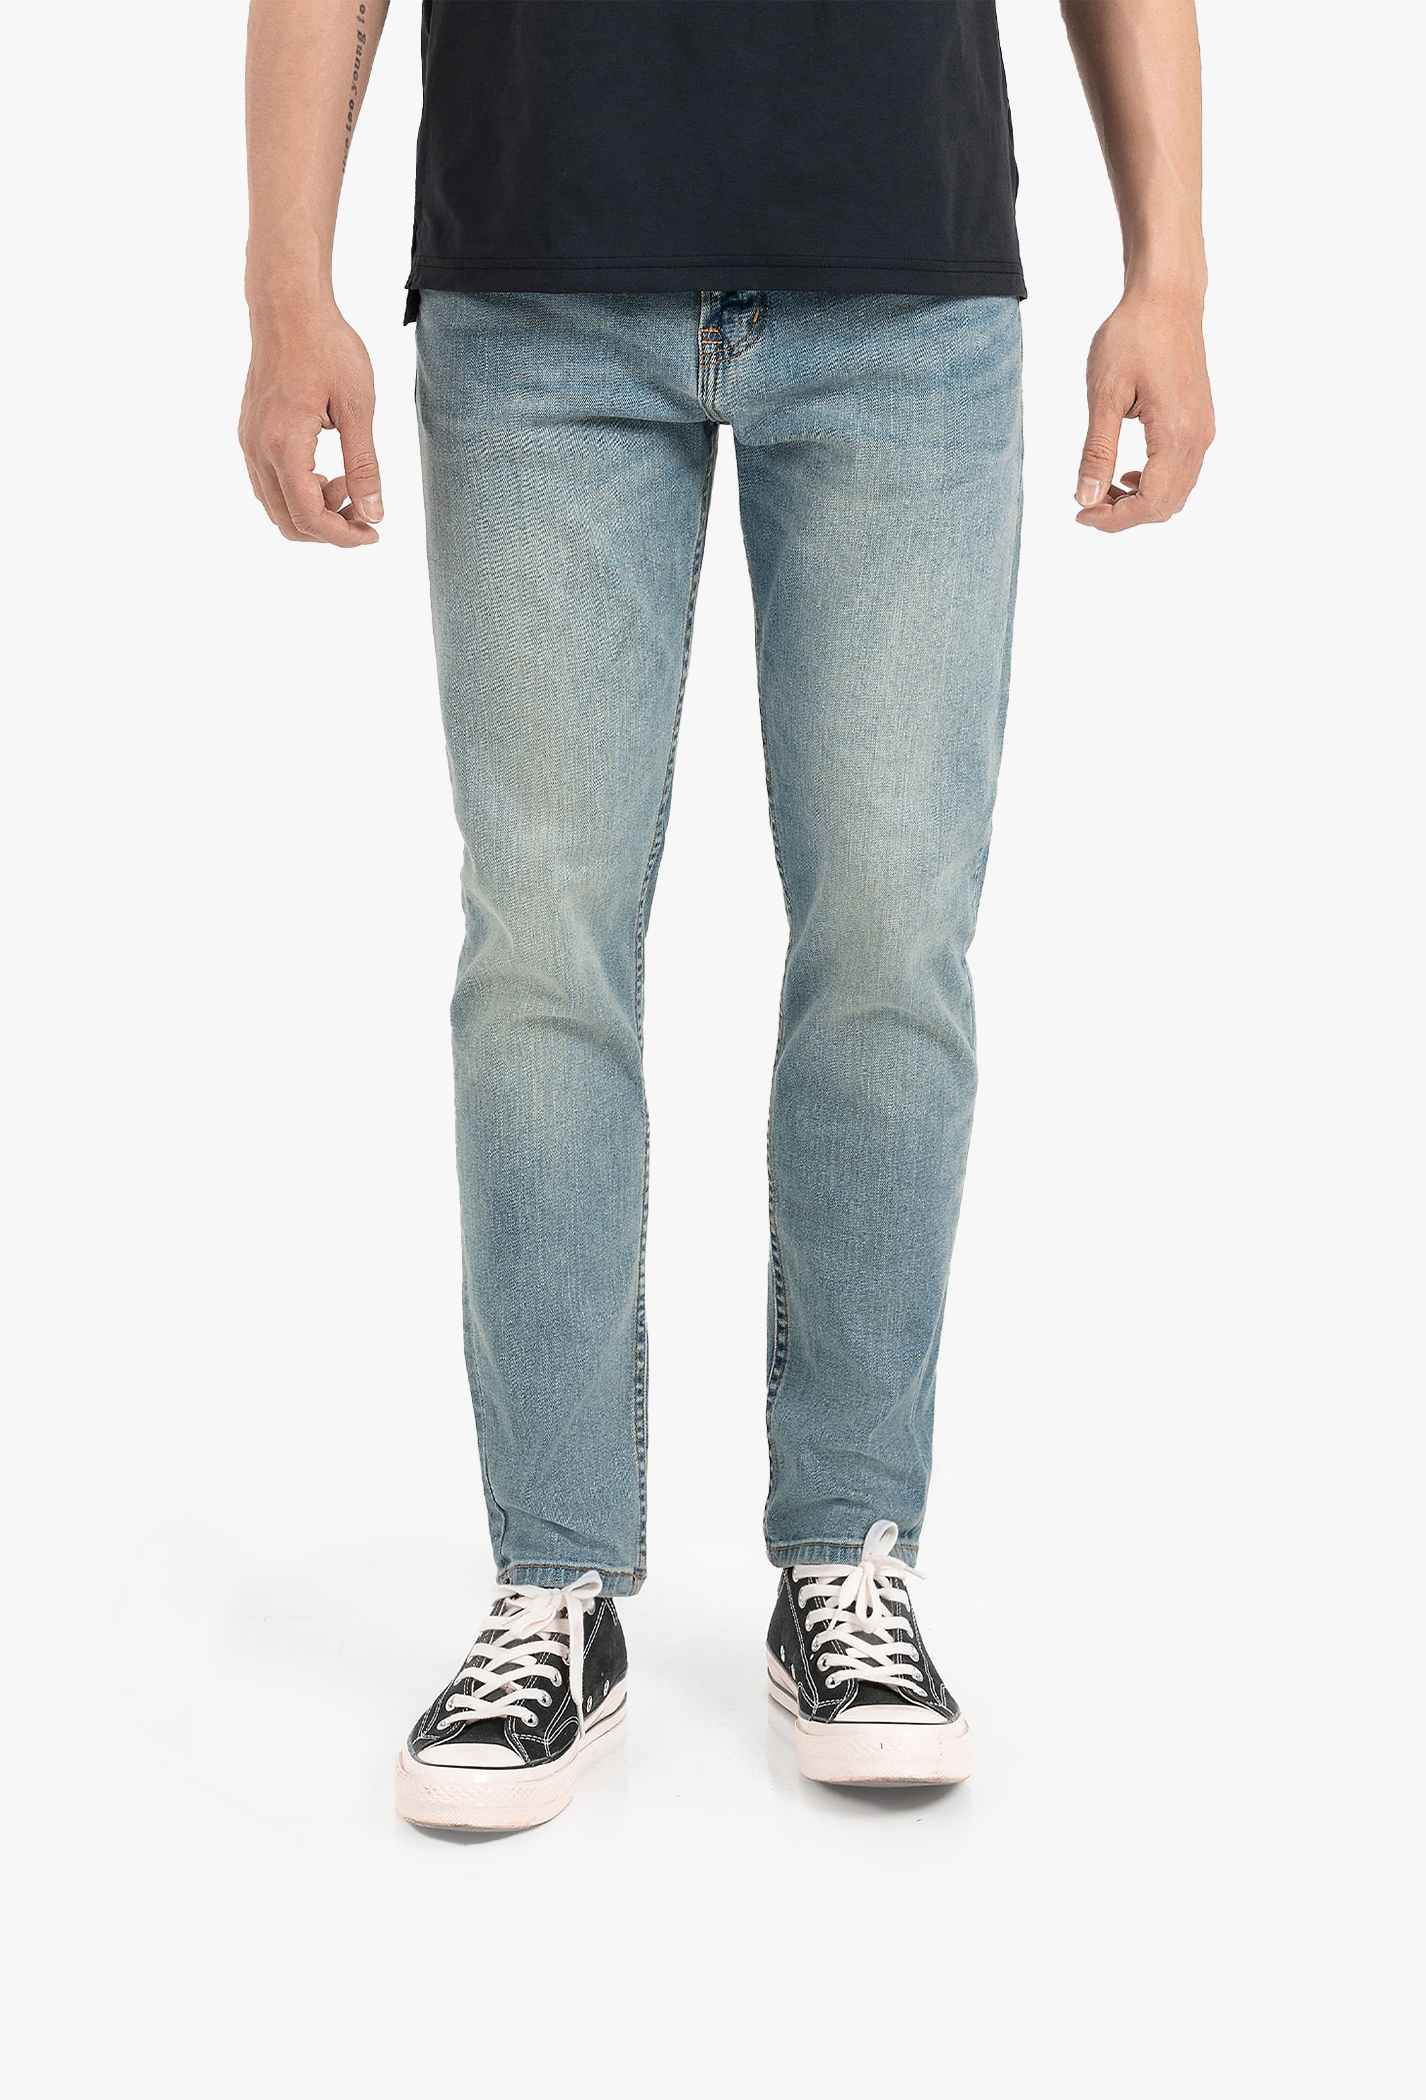 SĂN DEAL - Quần Jeans Basic Slim V2 Xanh nhạt